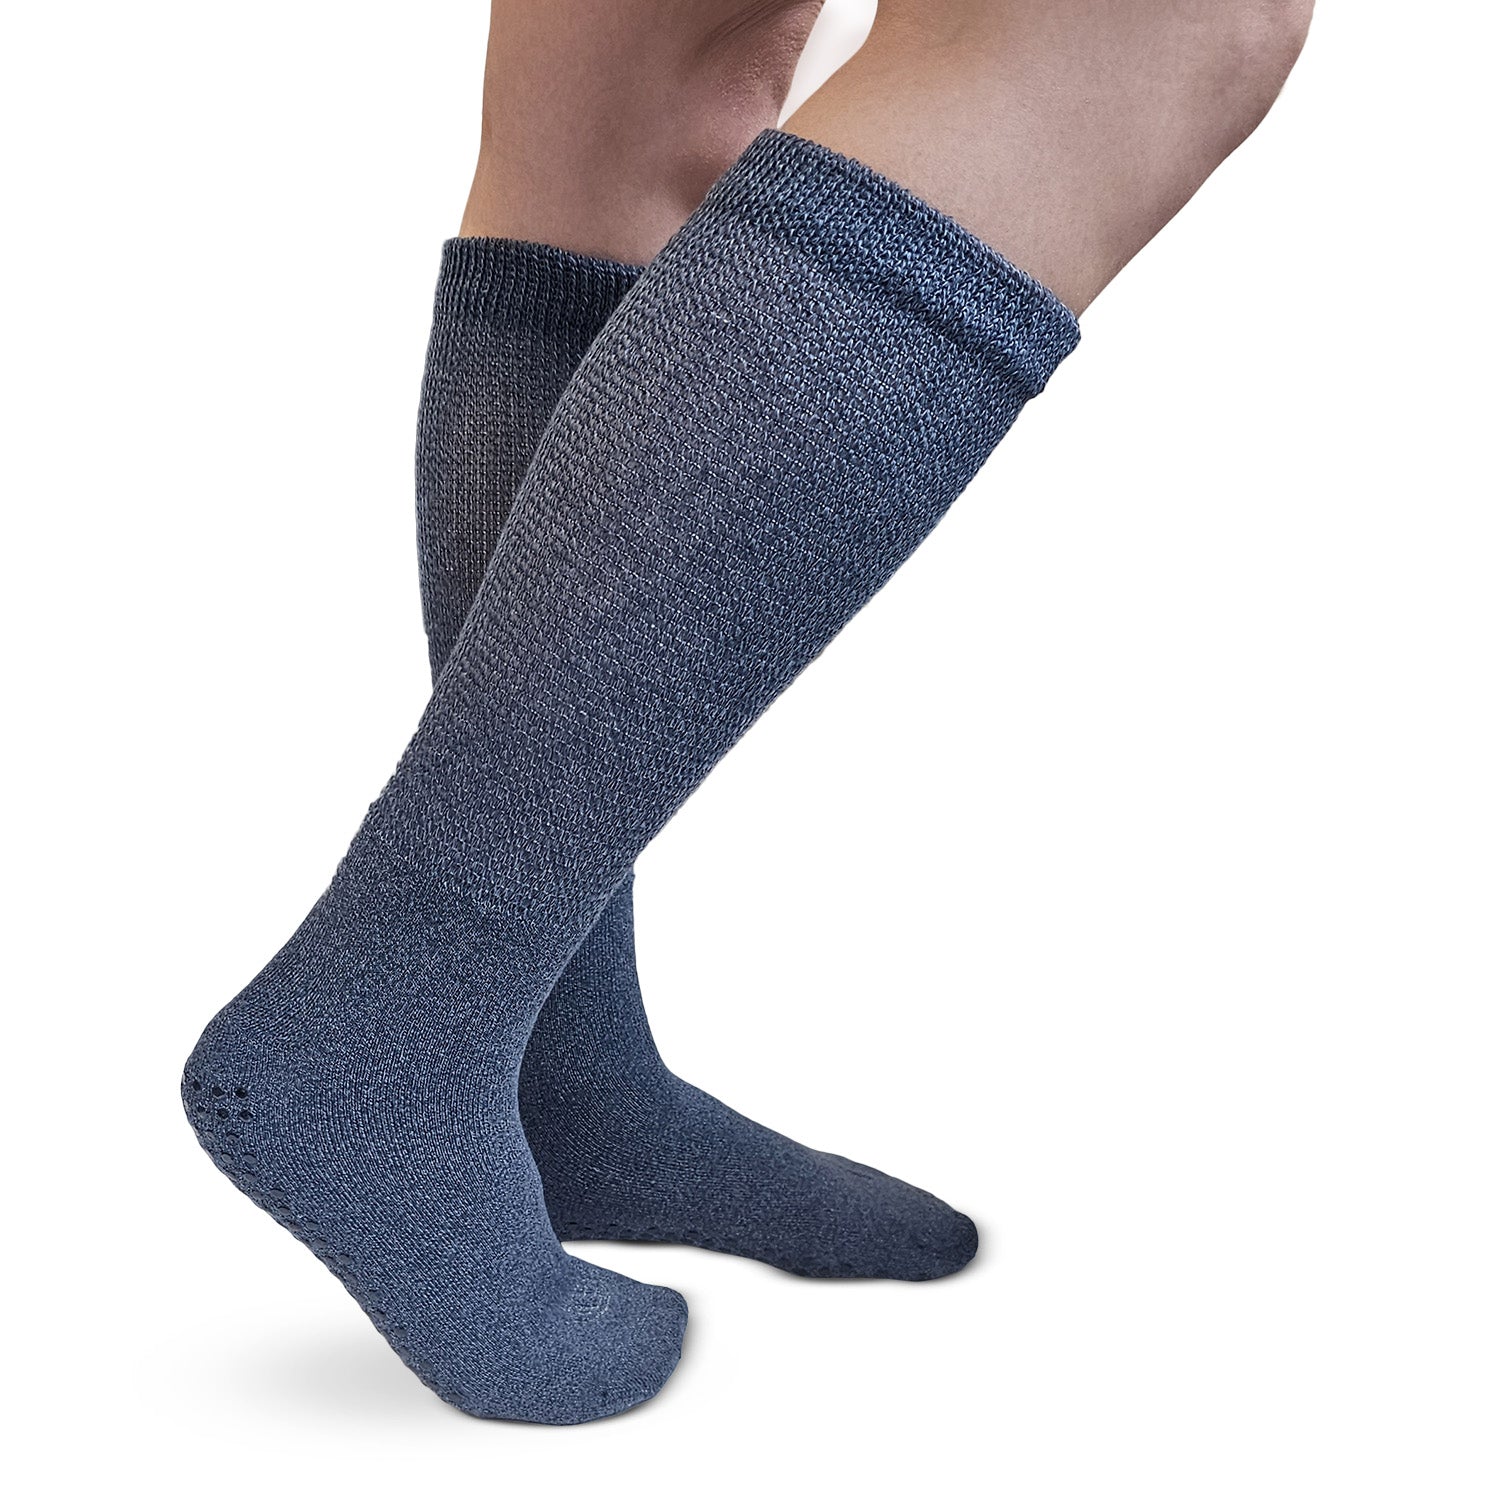 Diabetic Non-Slip Trouser Socks, 3 Pack